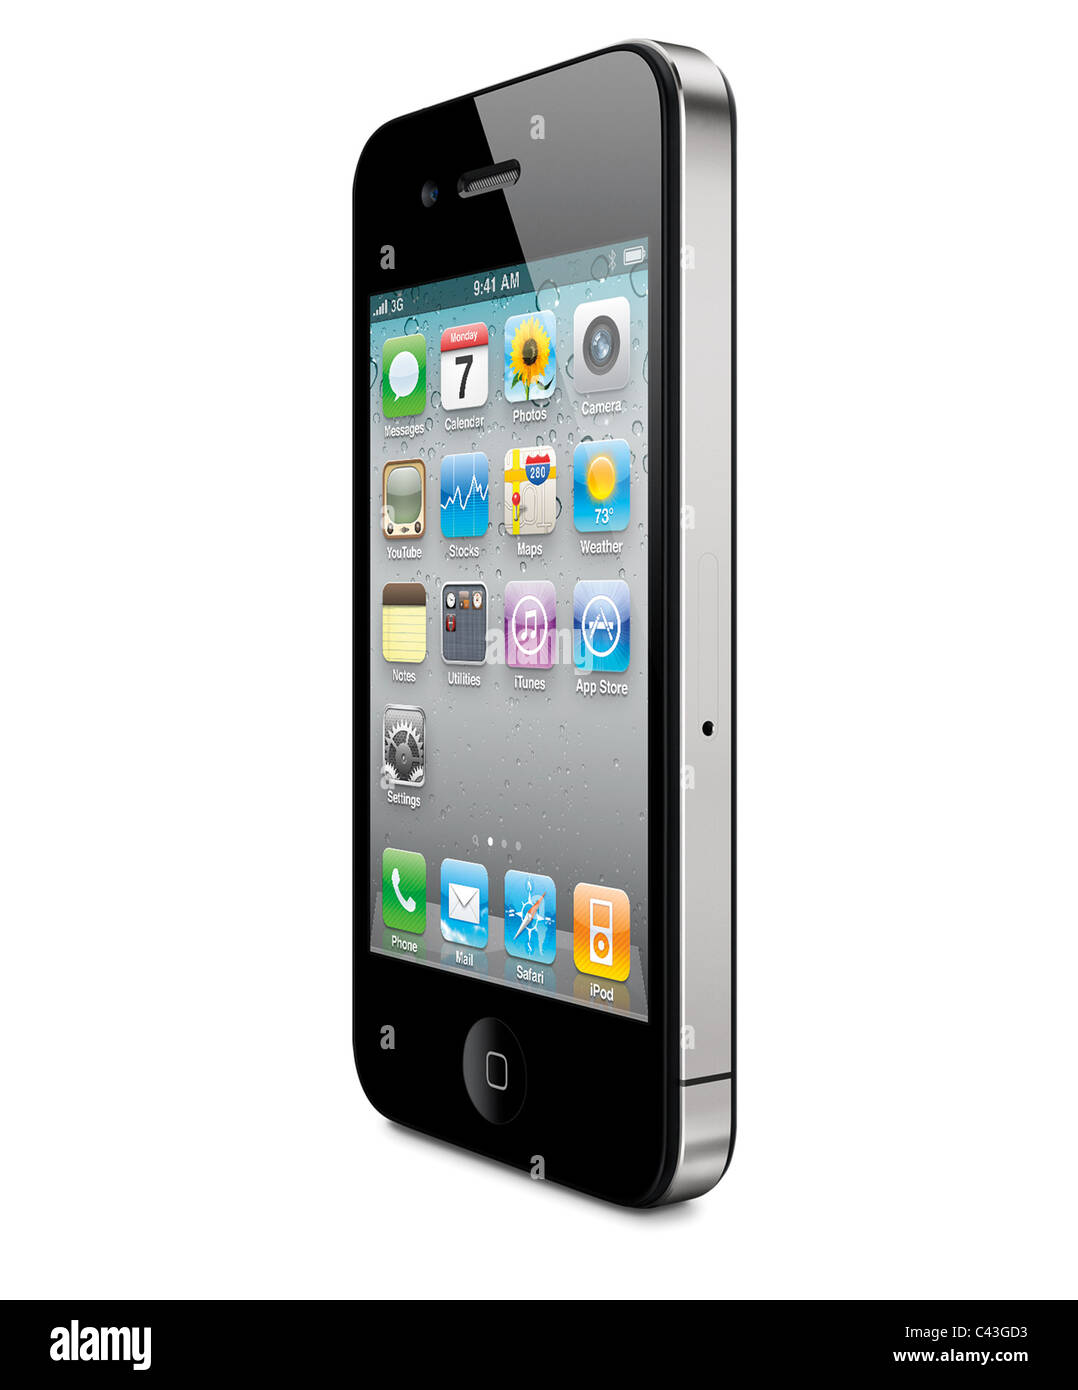 IPhone 4 tagliato fuori vista in prospettiva, in sfondo bianco Foto Stock